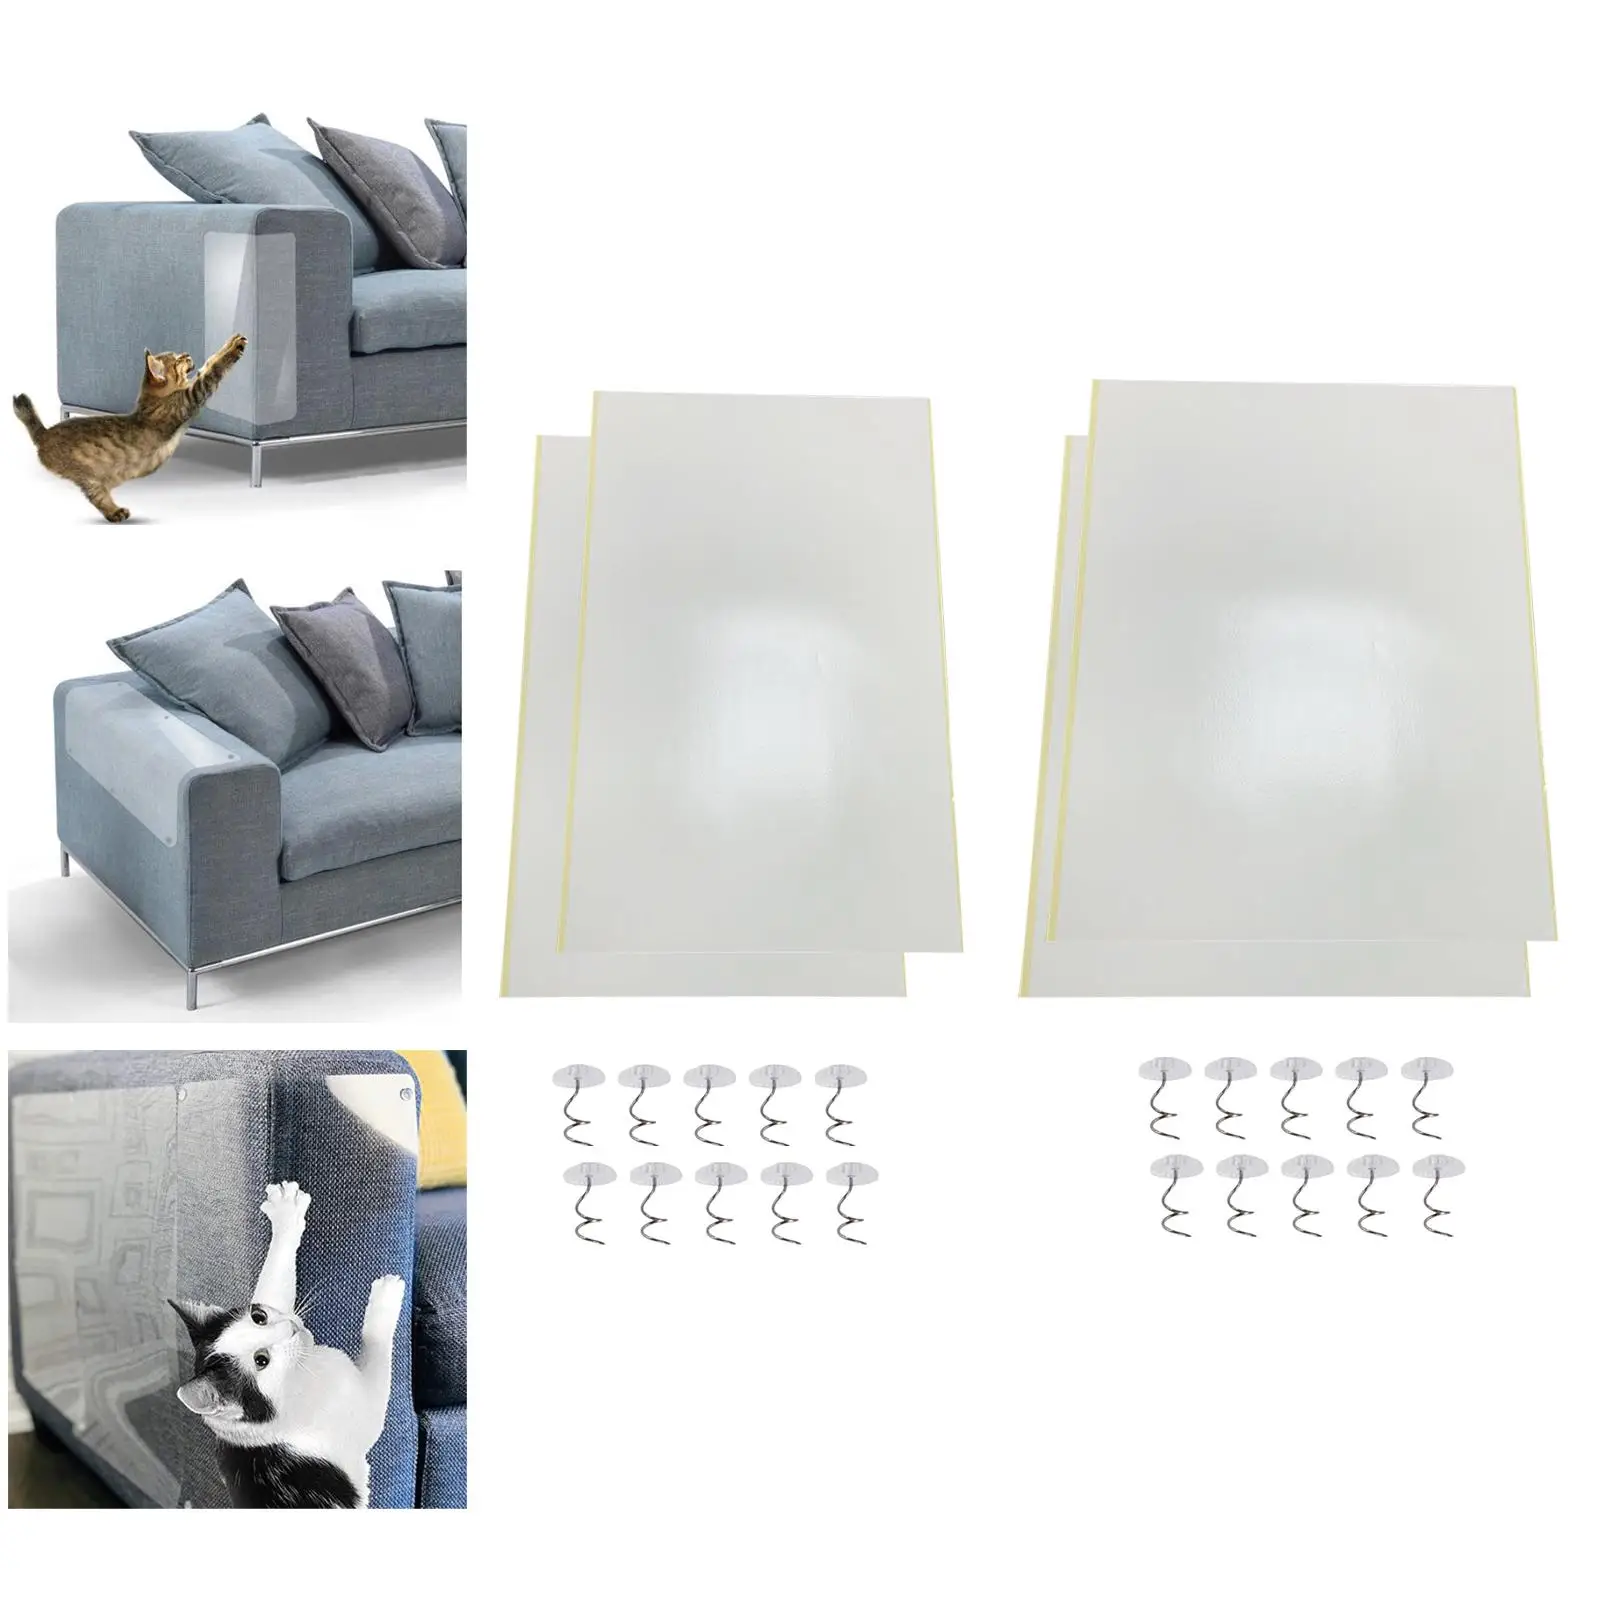 Anti Scratch Deterrent Tape, Furniture Protector Cat Scratching Pad, Anti Scratch Couch Guards